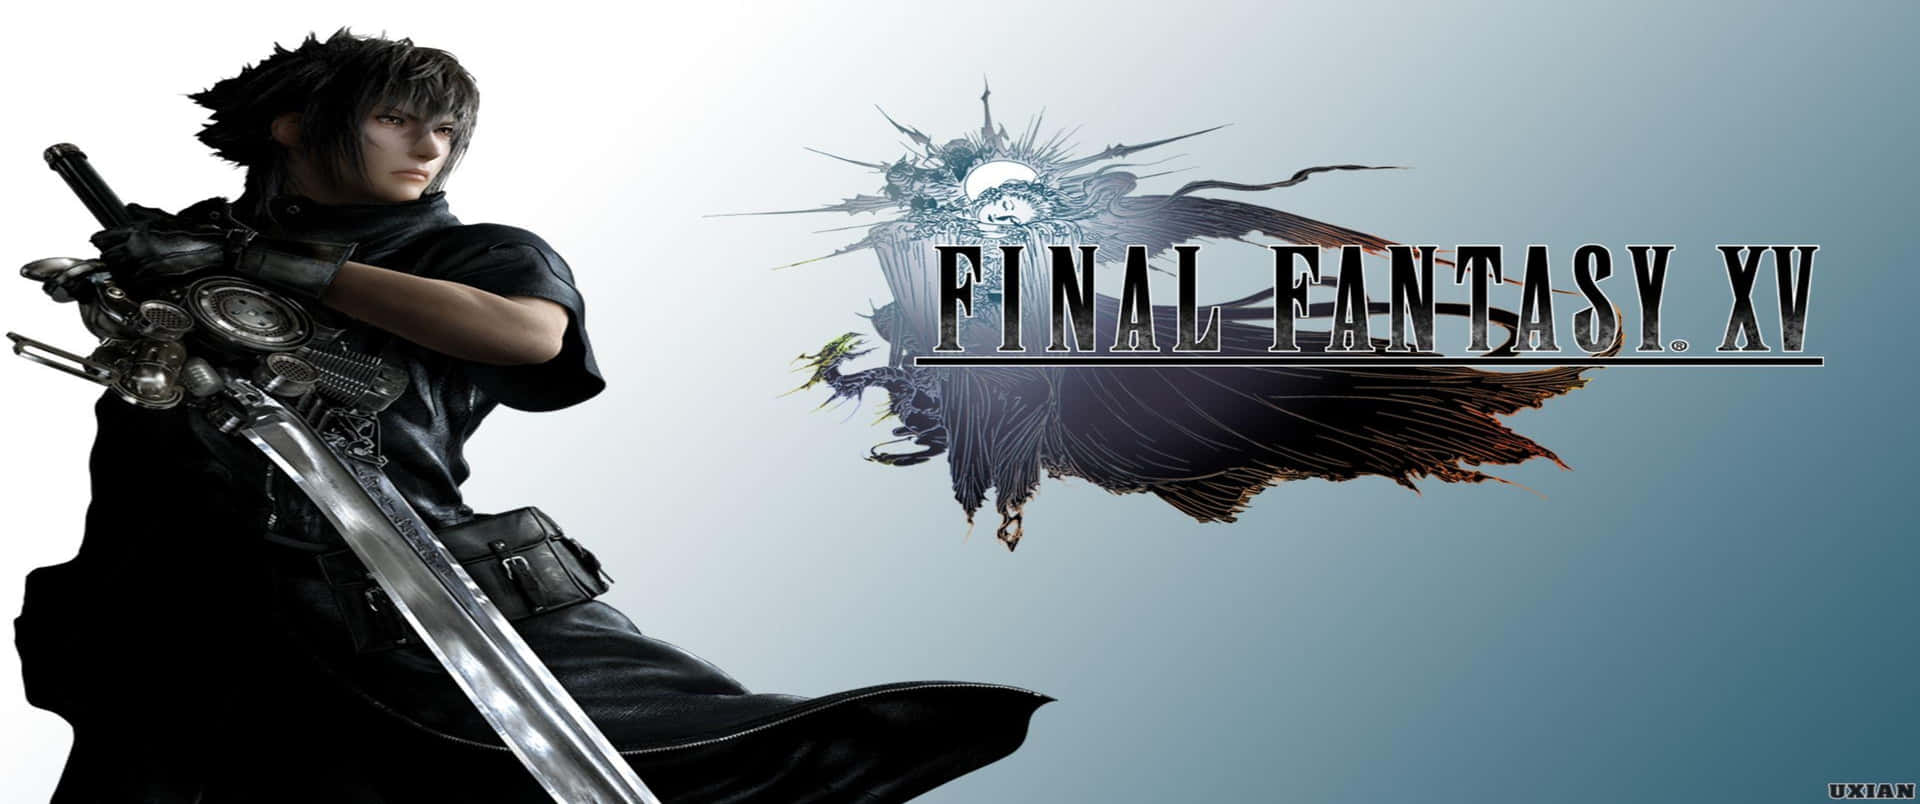 Unosfondo Di Final Fantasy Xv Ad Alta Definizione